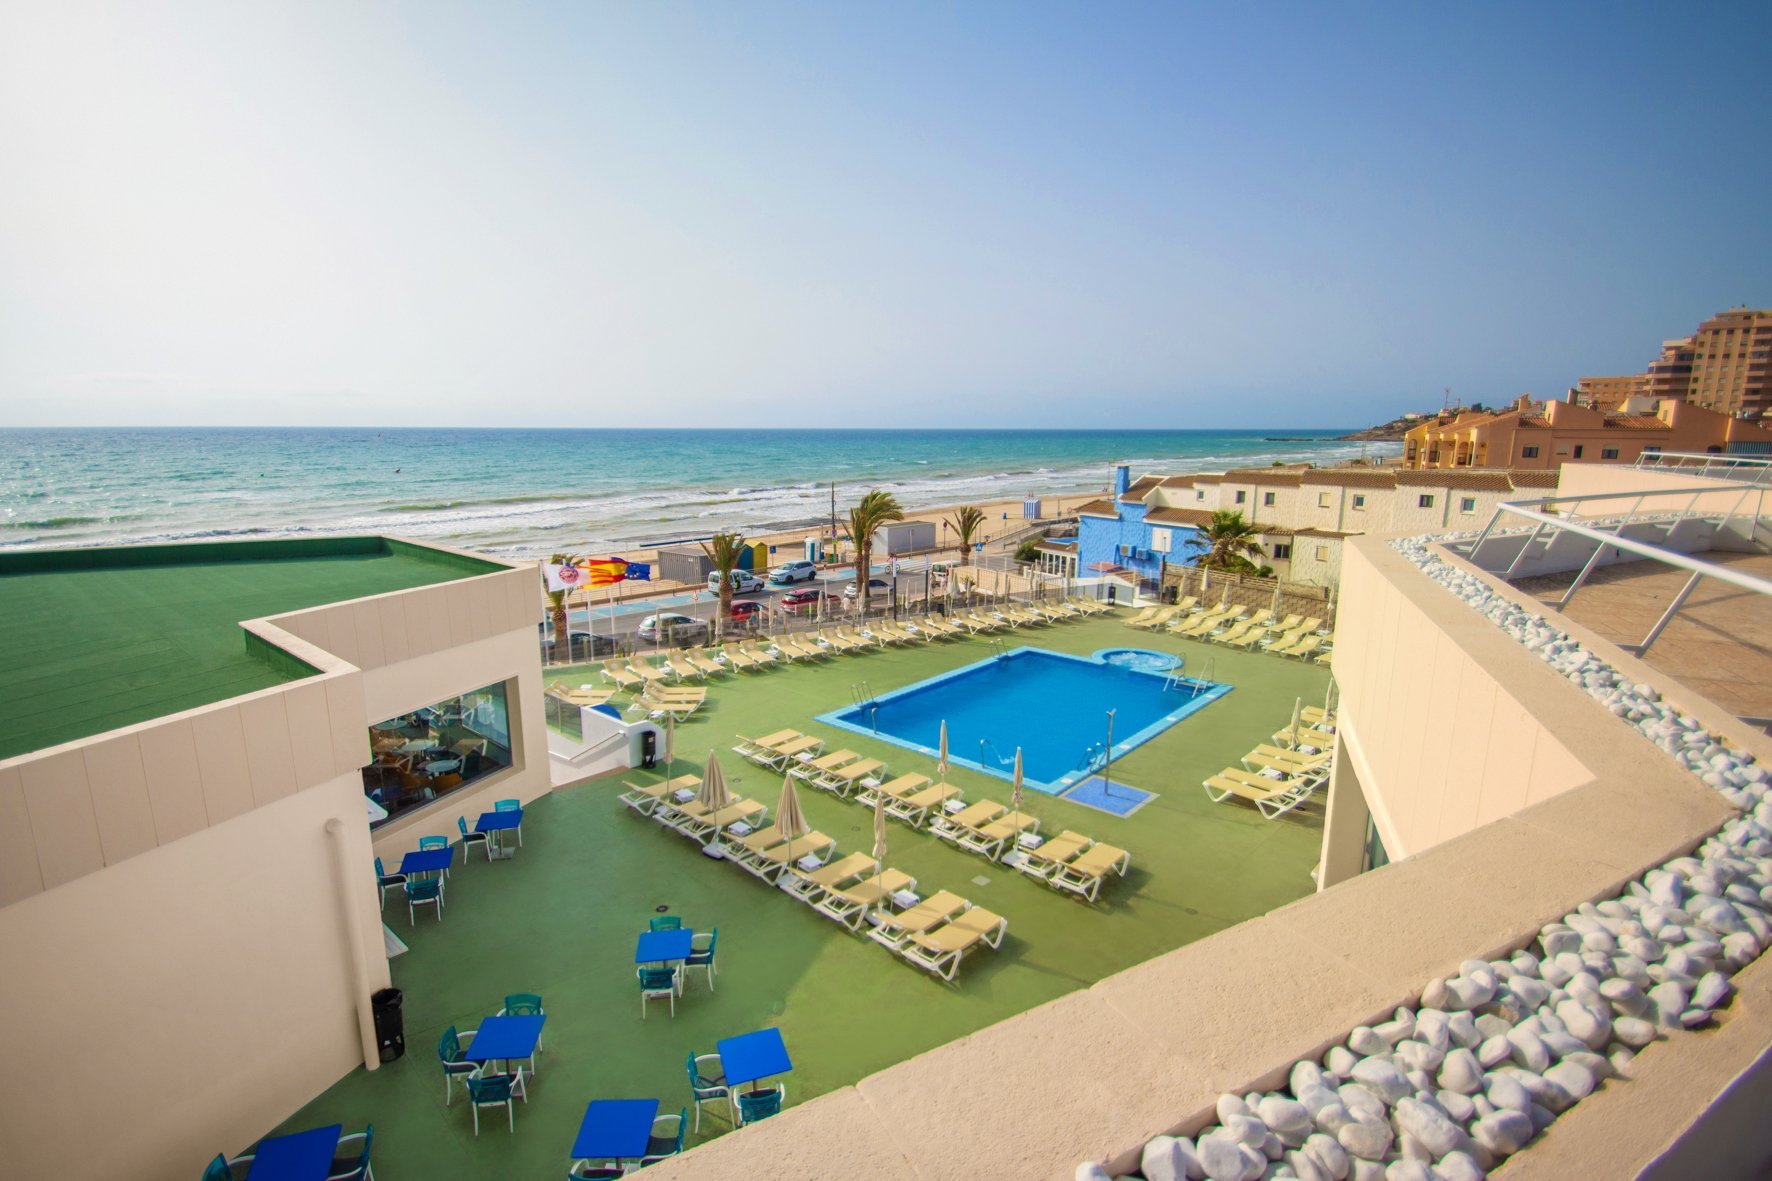 06-oropesa-del-mar-hotel-koral-beach-piscina-07.jpg